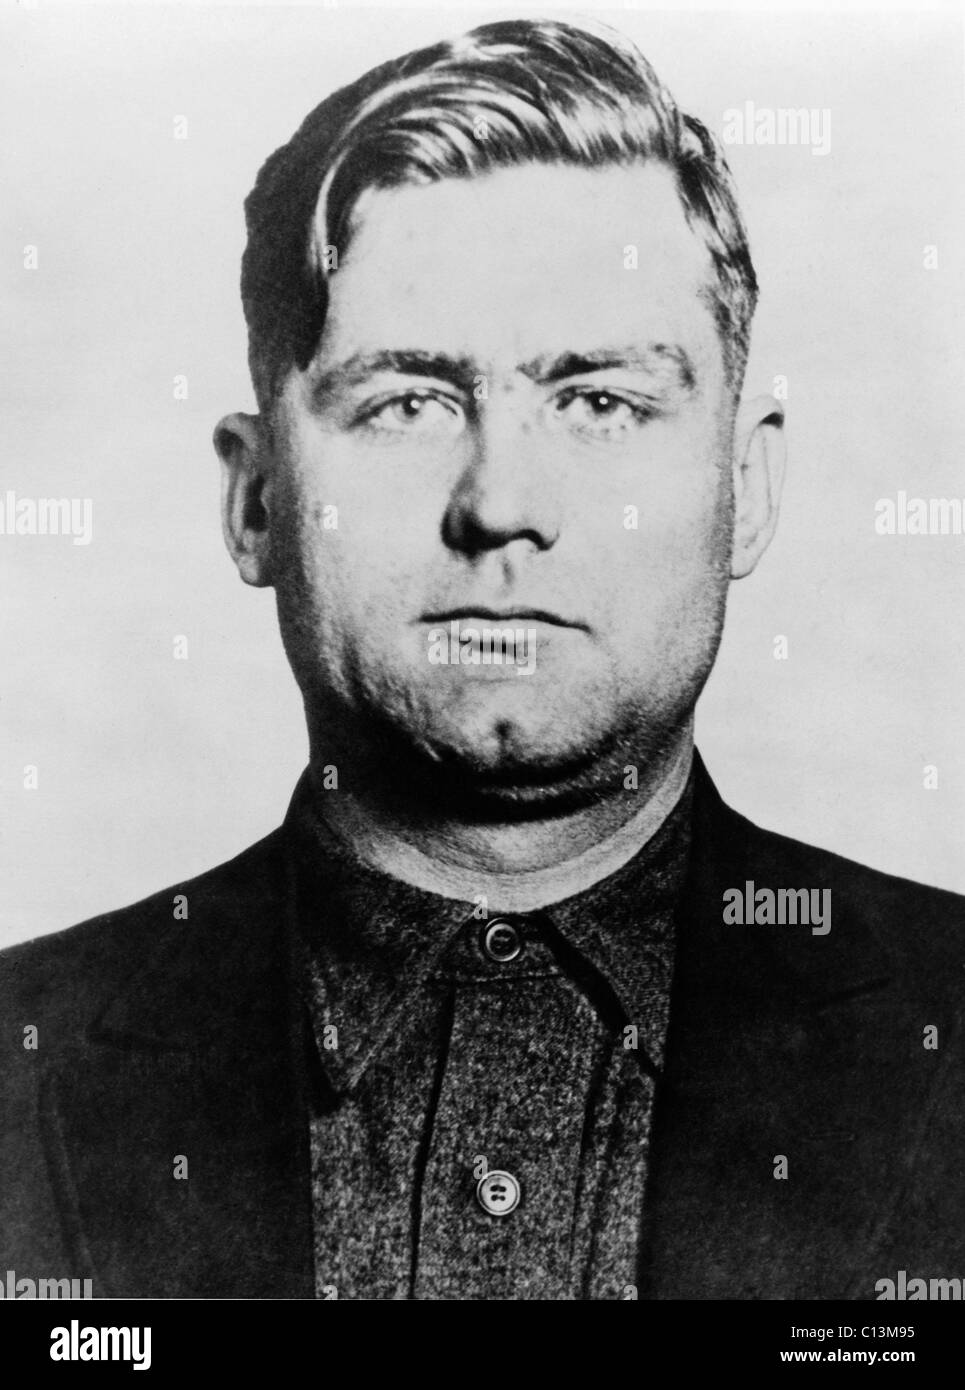 George "Bugs" Moran 1891-1957 Chicago Gangster und Polnisch-irischer der Chef der Nordseite Bande ein Rivale von Al Capone Mob. Capone getötet 6 Mitglieder der Morans Gang bei 1929 St. Valentines Day Massacre. Stockfoto